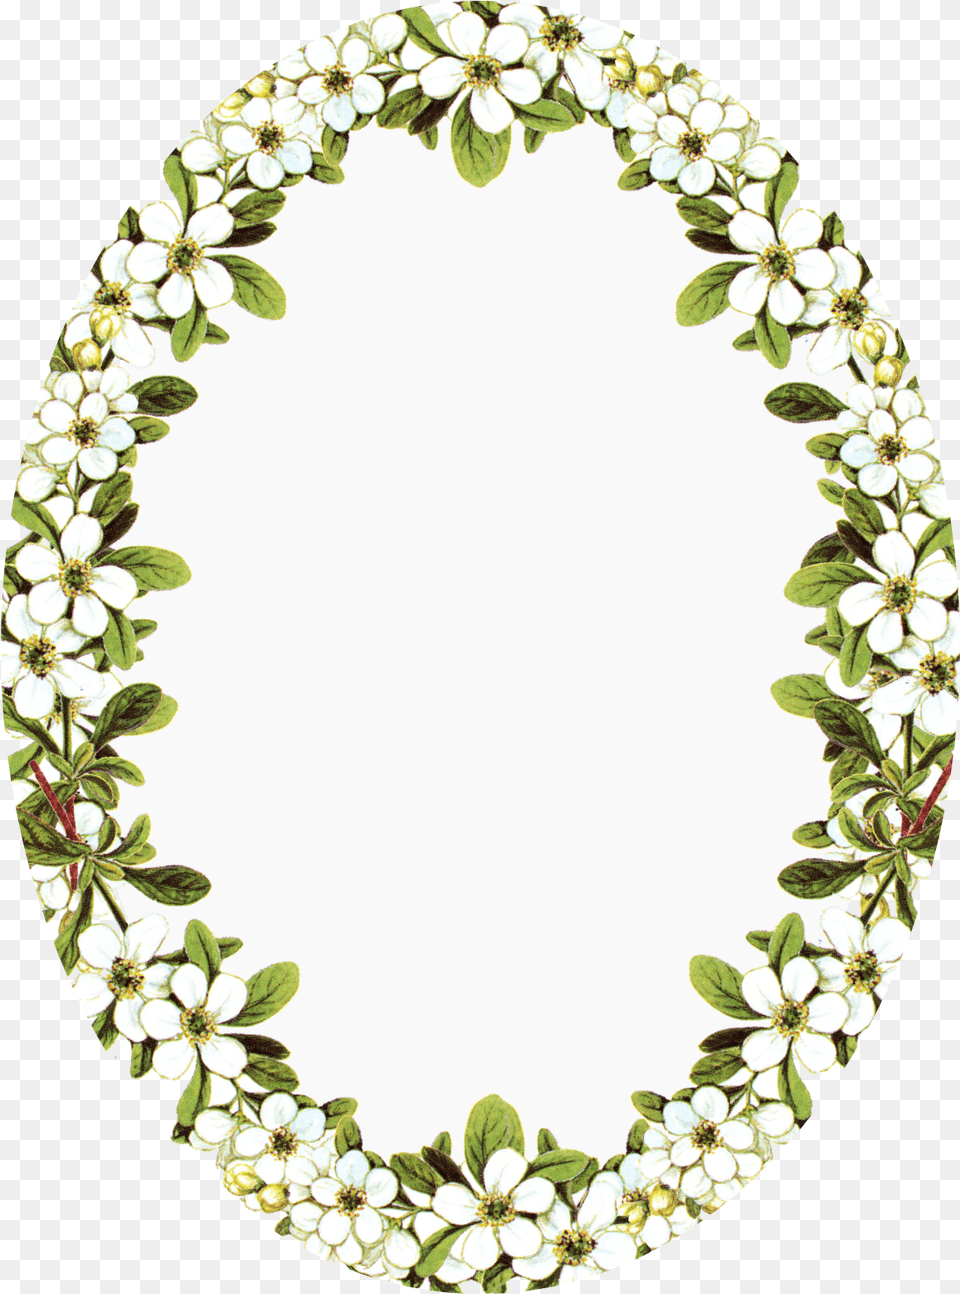 Vintage Frame Clip Art Oval Flower Frames Full Size Frame Oval With Flowers, Photography, Plant, Leaf Png Image